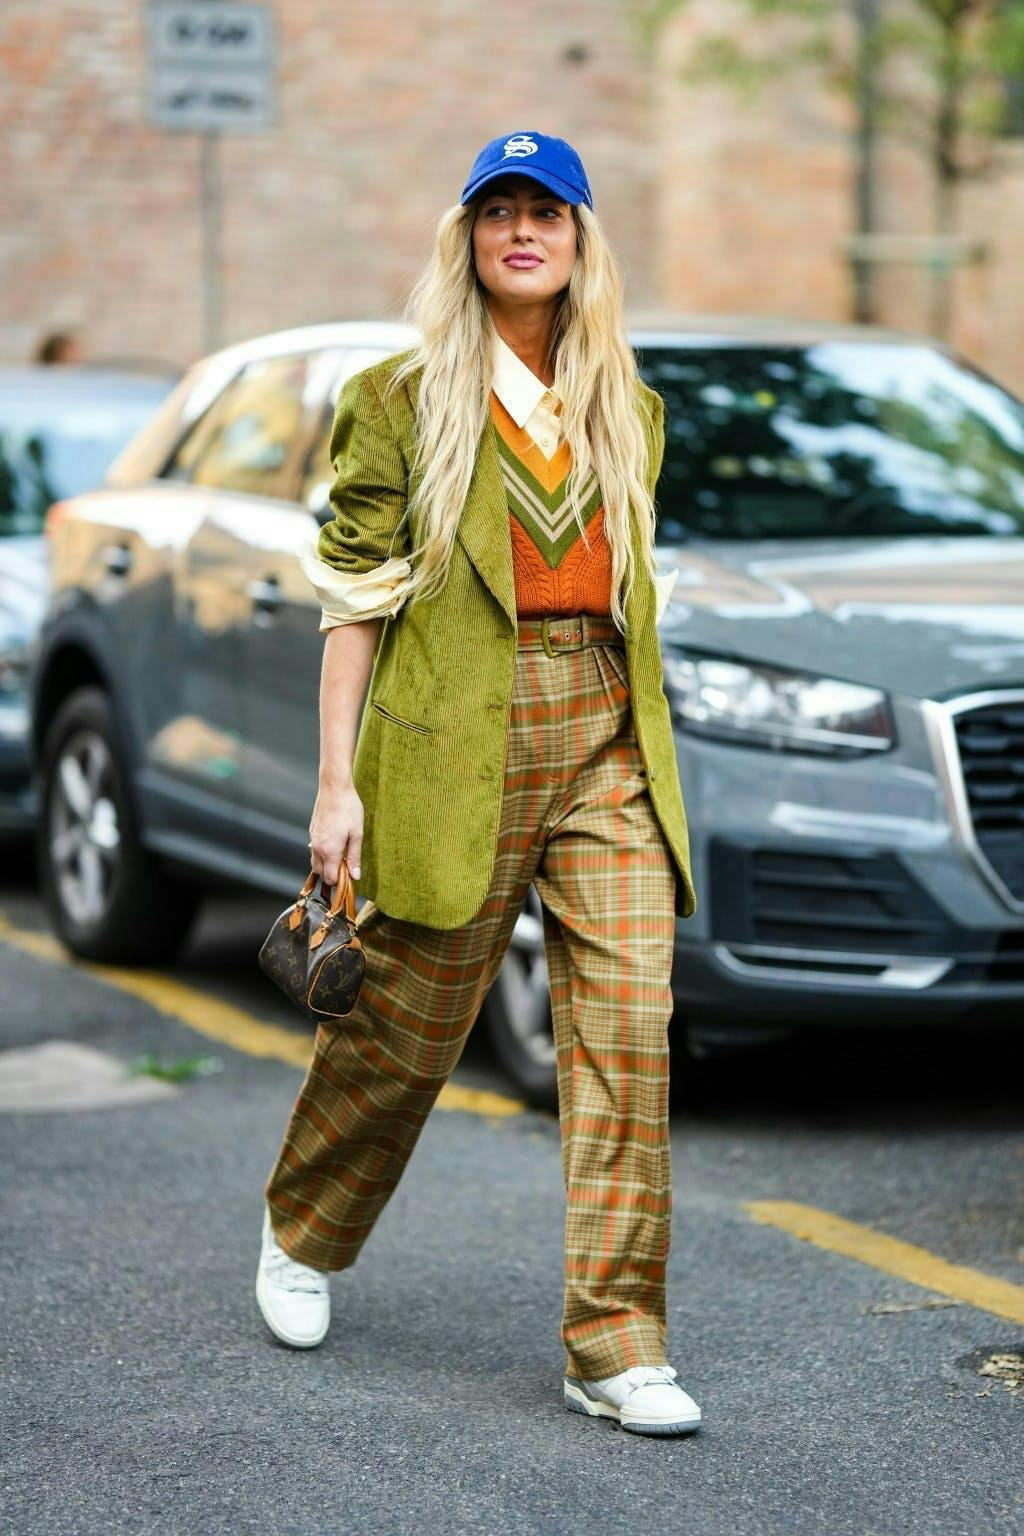 clothing person female car blonde woman wheel shoe coat suit